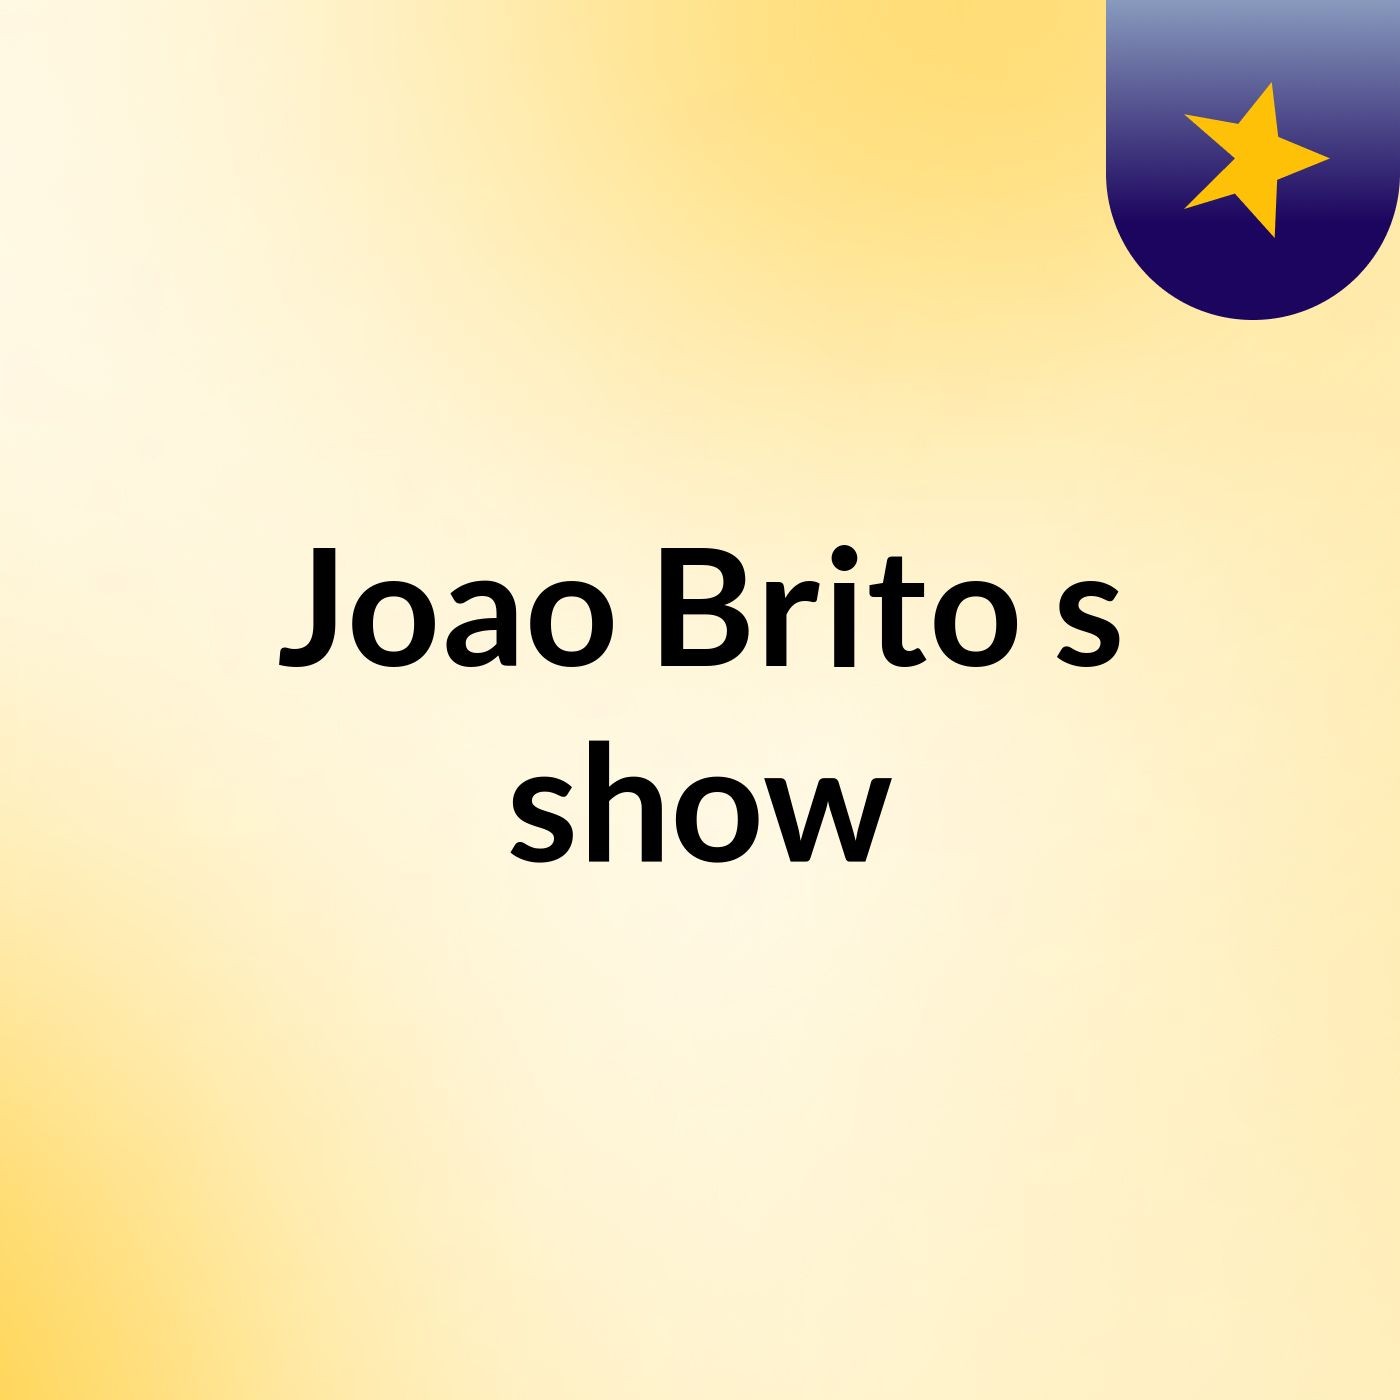 Joao Brito's show